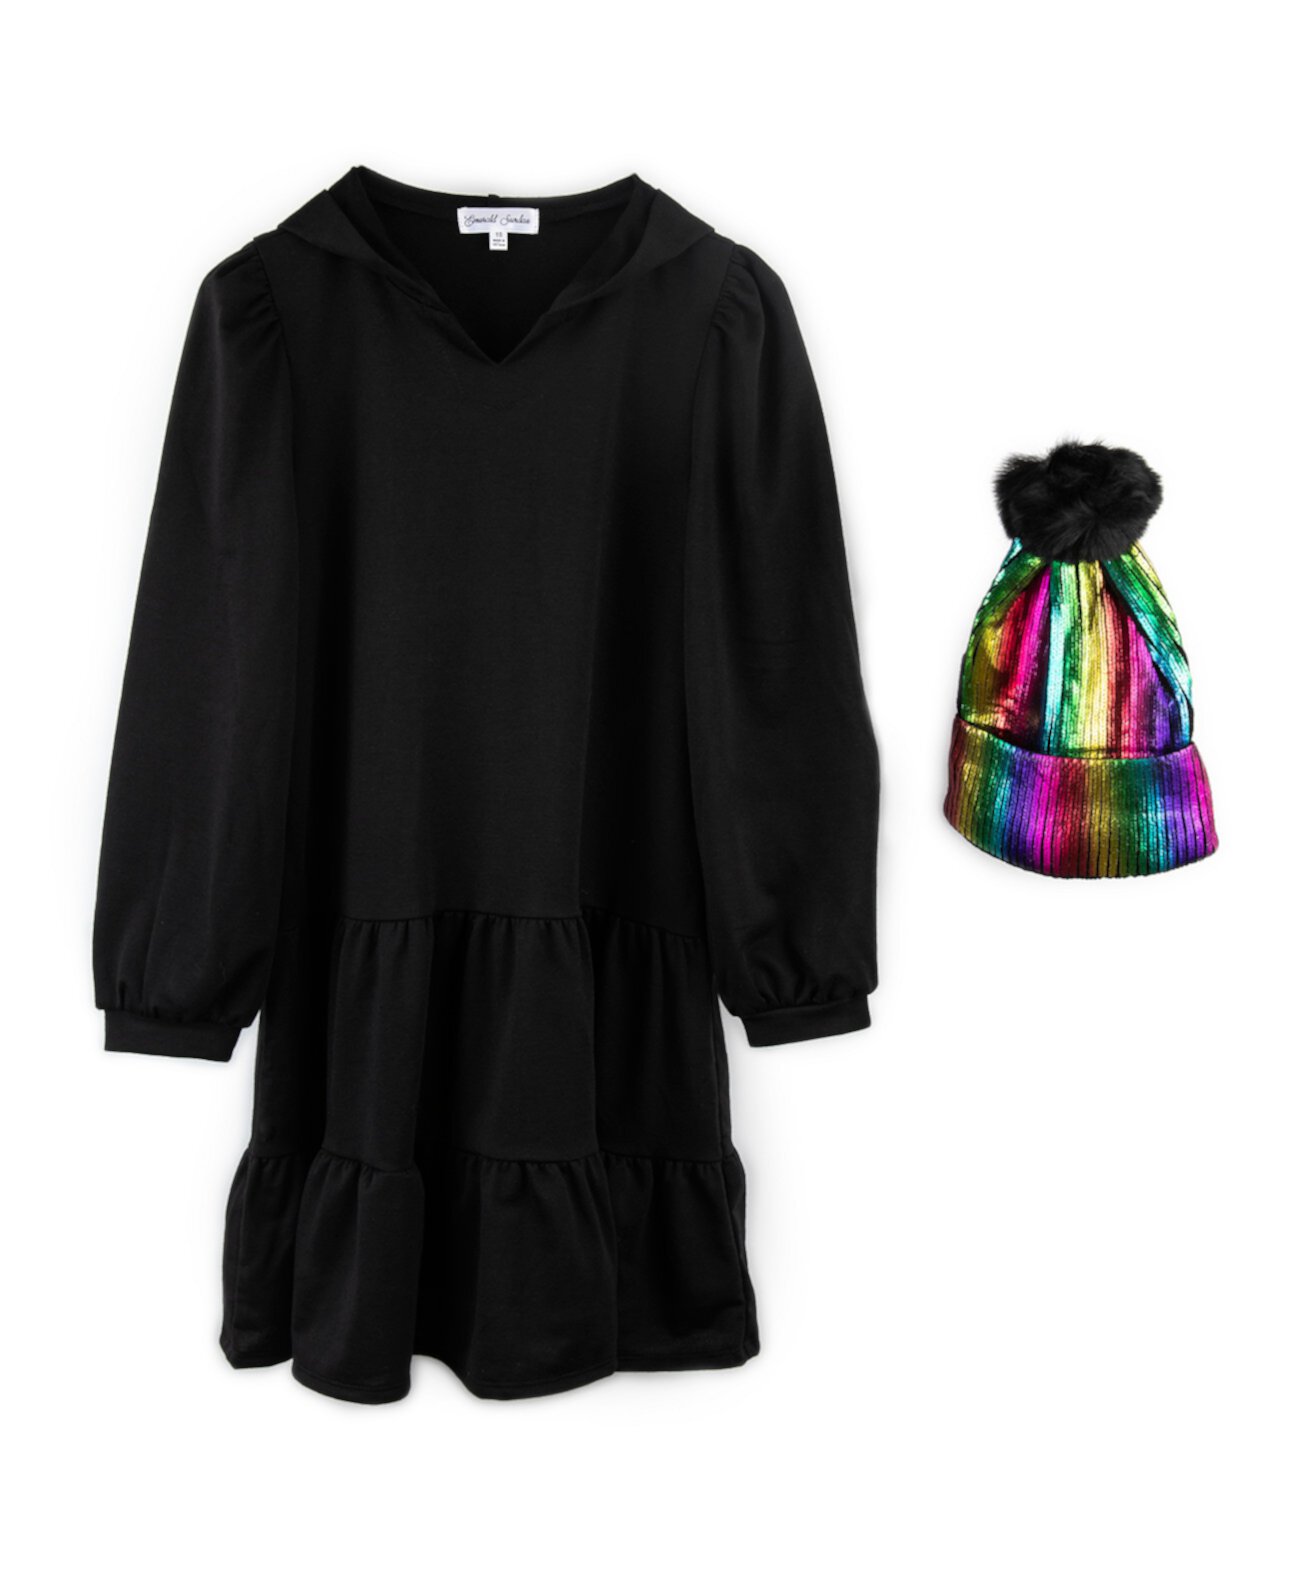 Платье-толстовка с капюшоном из 2 предметов для больших девочек и шапочка из фольги радуги Emerald Sundae